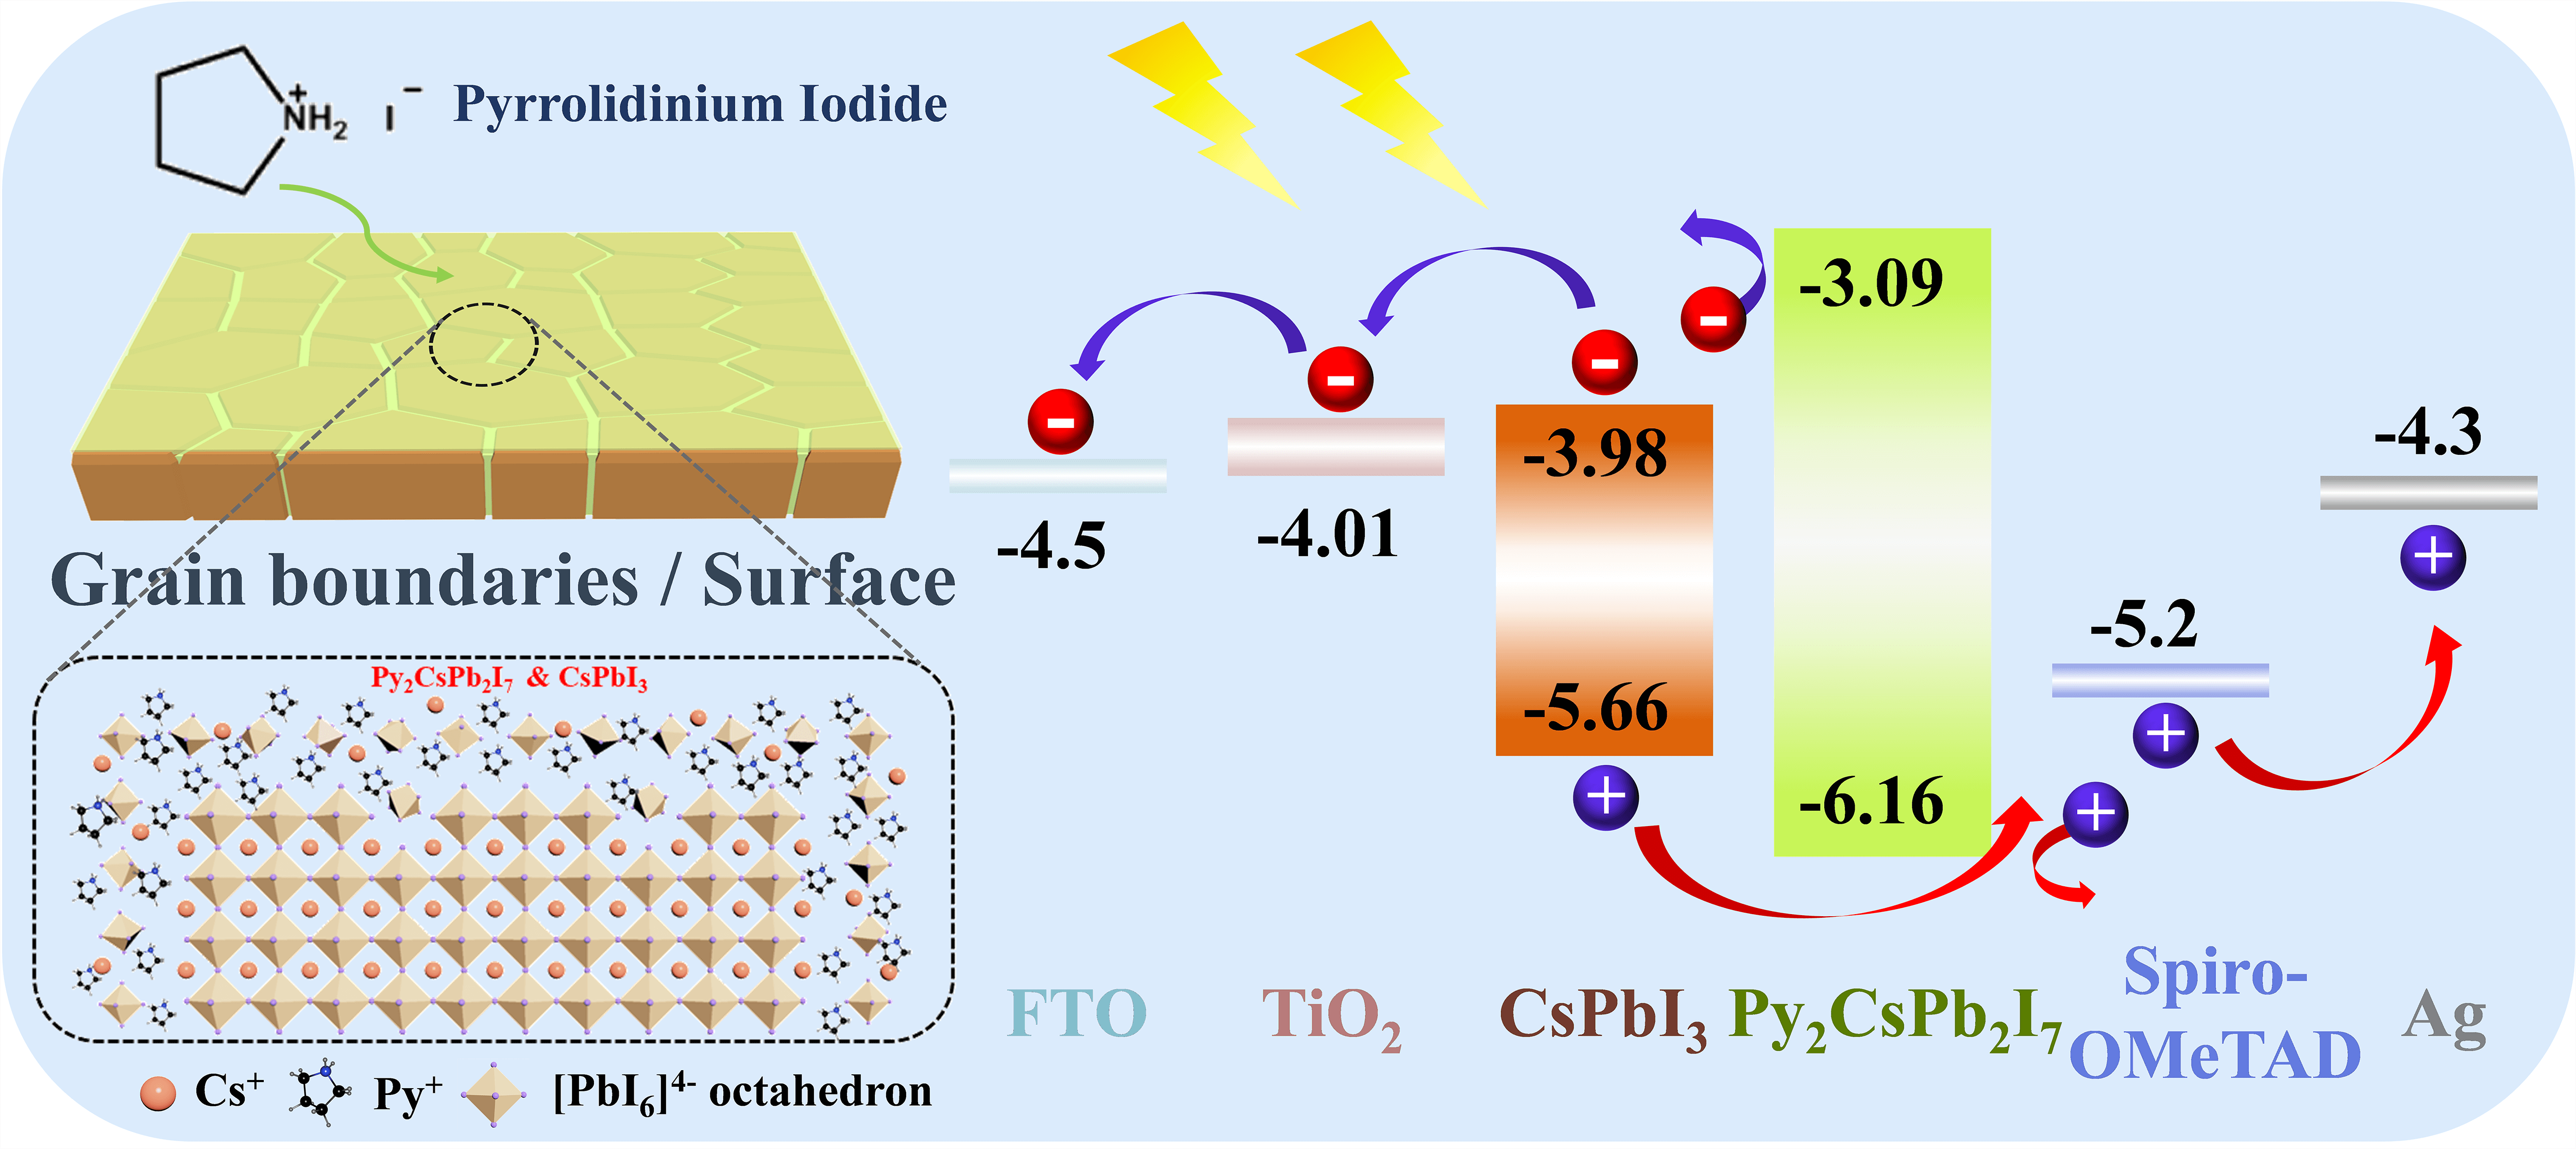 Treating CsPbI<sub>3</sub> Perovskite with Pyrrolidinium Iodide to Improve the Performance of Perovskite Solar Cells